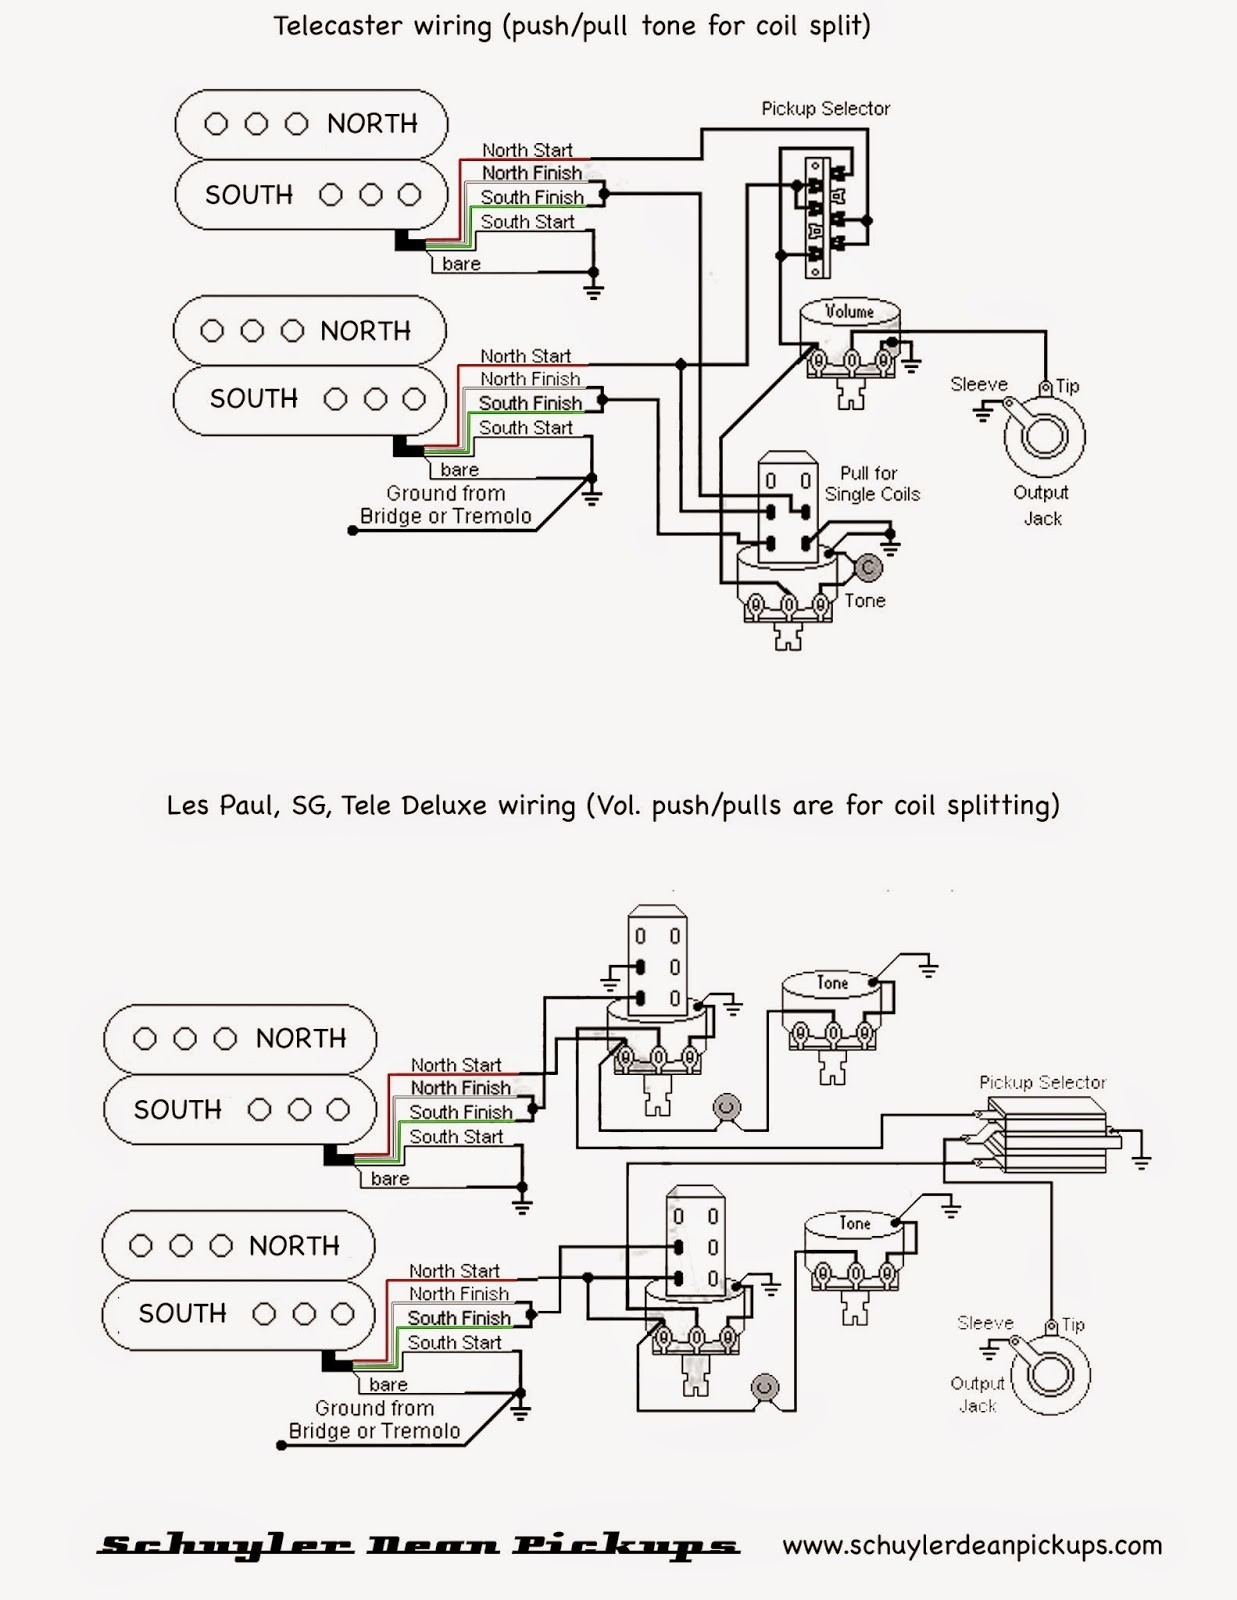 Split Coils Wiring Diagram For A Les Paul | Wiring Diagram - Coil Split Wiring Diagram